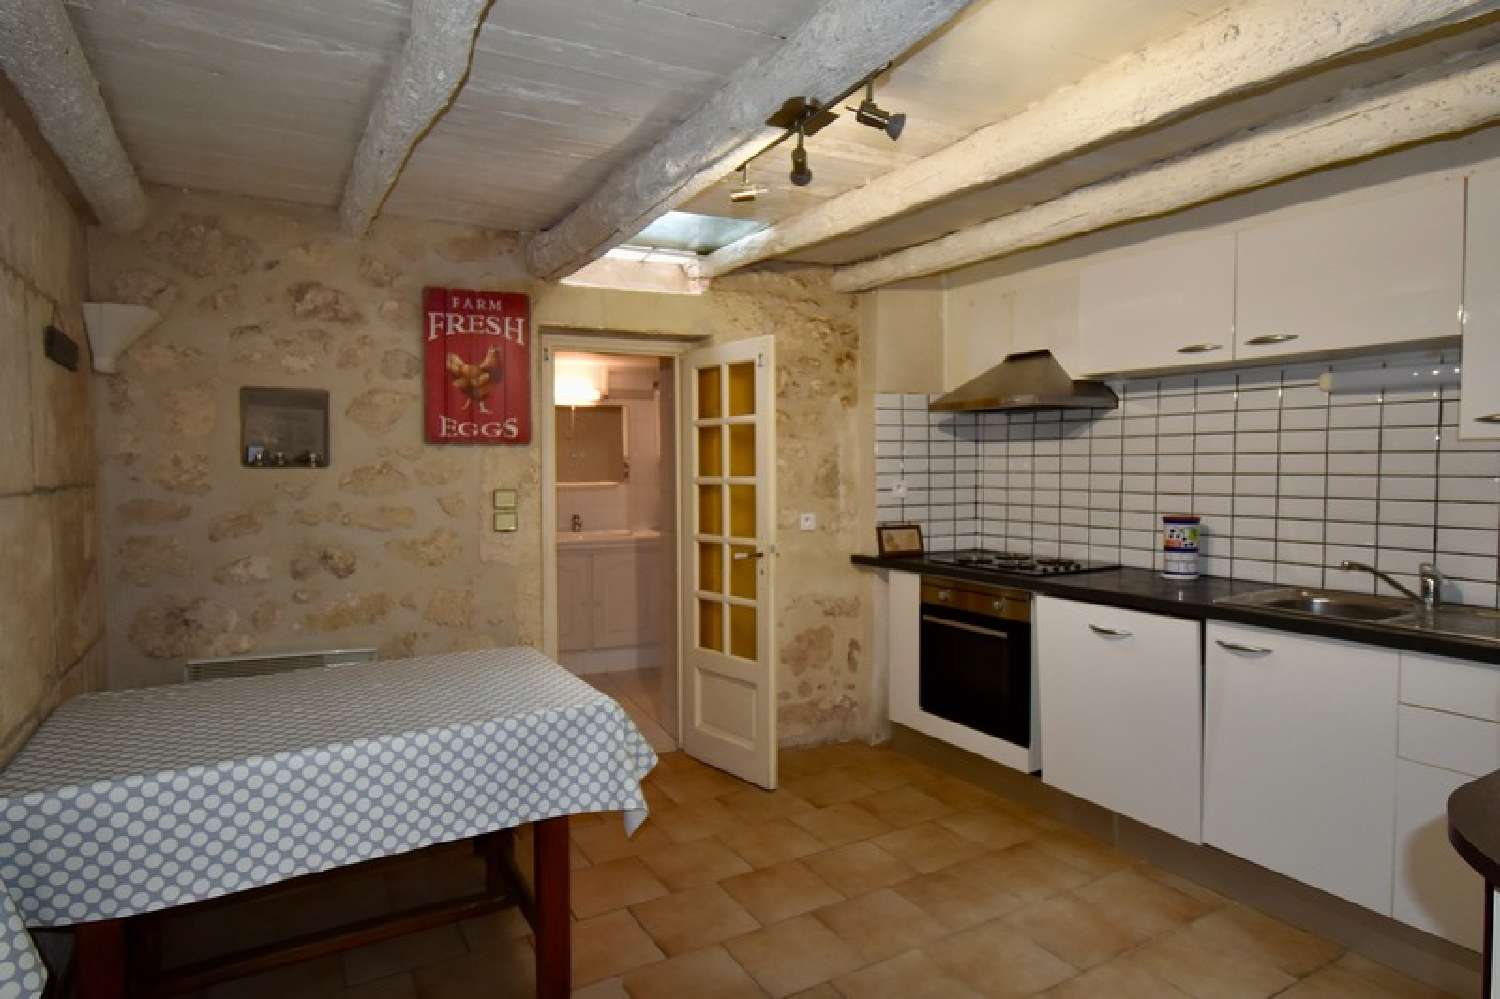  à vendre maison de village Fontvieille Bouches-du-Rhône 2